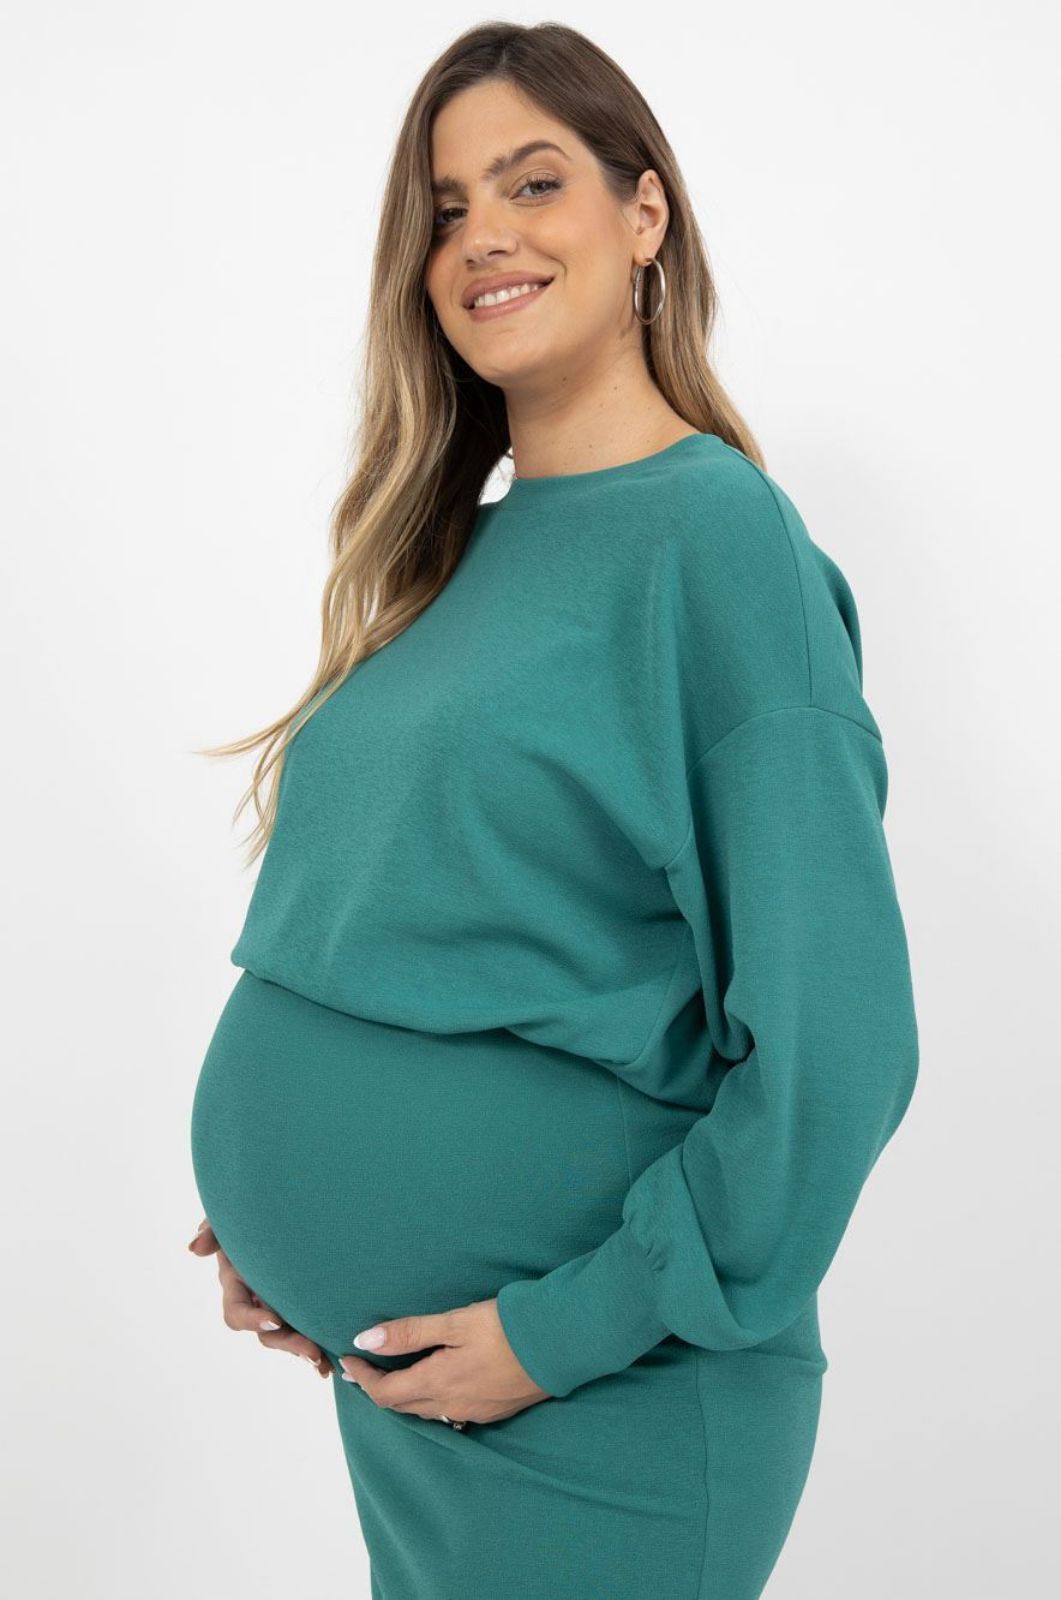 אישה לובשת טופ רות להריון ש.ארוך ירוק של אבישג ארבל